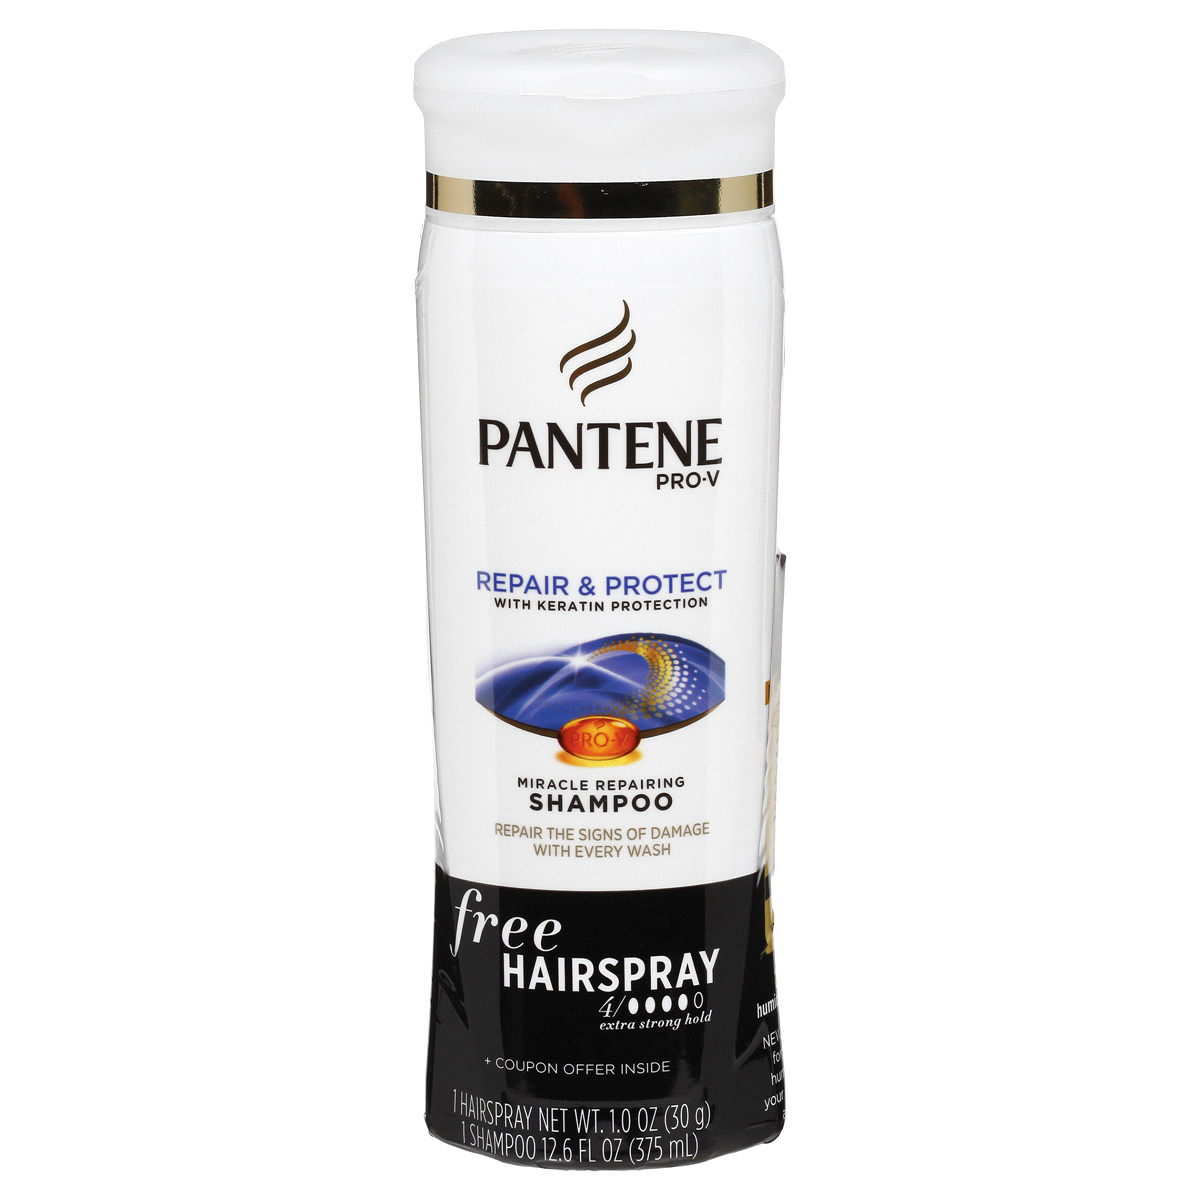 slide 1 of 6, Pantene Pro-V Repair Protect Miracle Repairing Shampoo, 12.6 fl oz